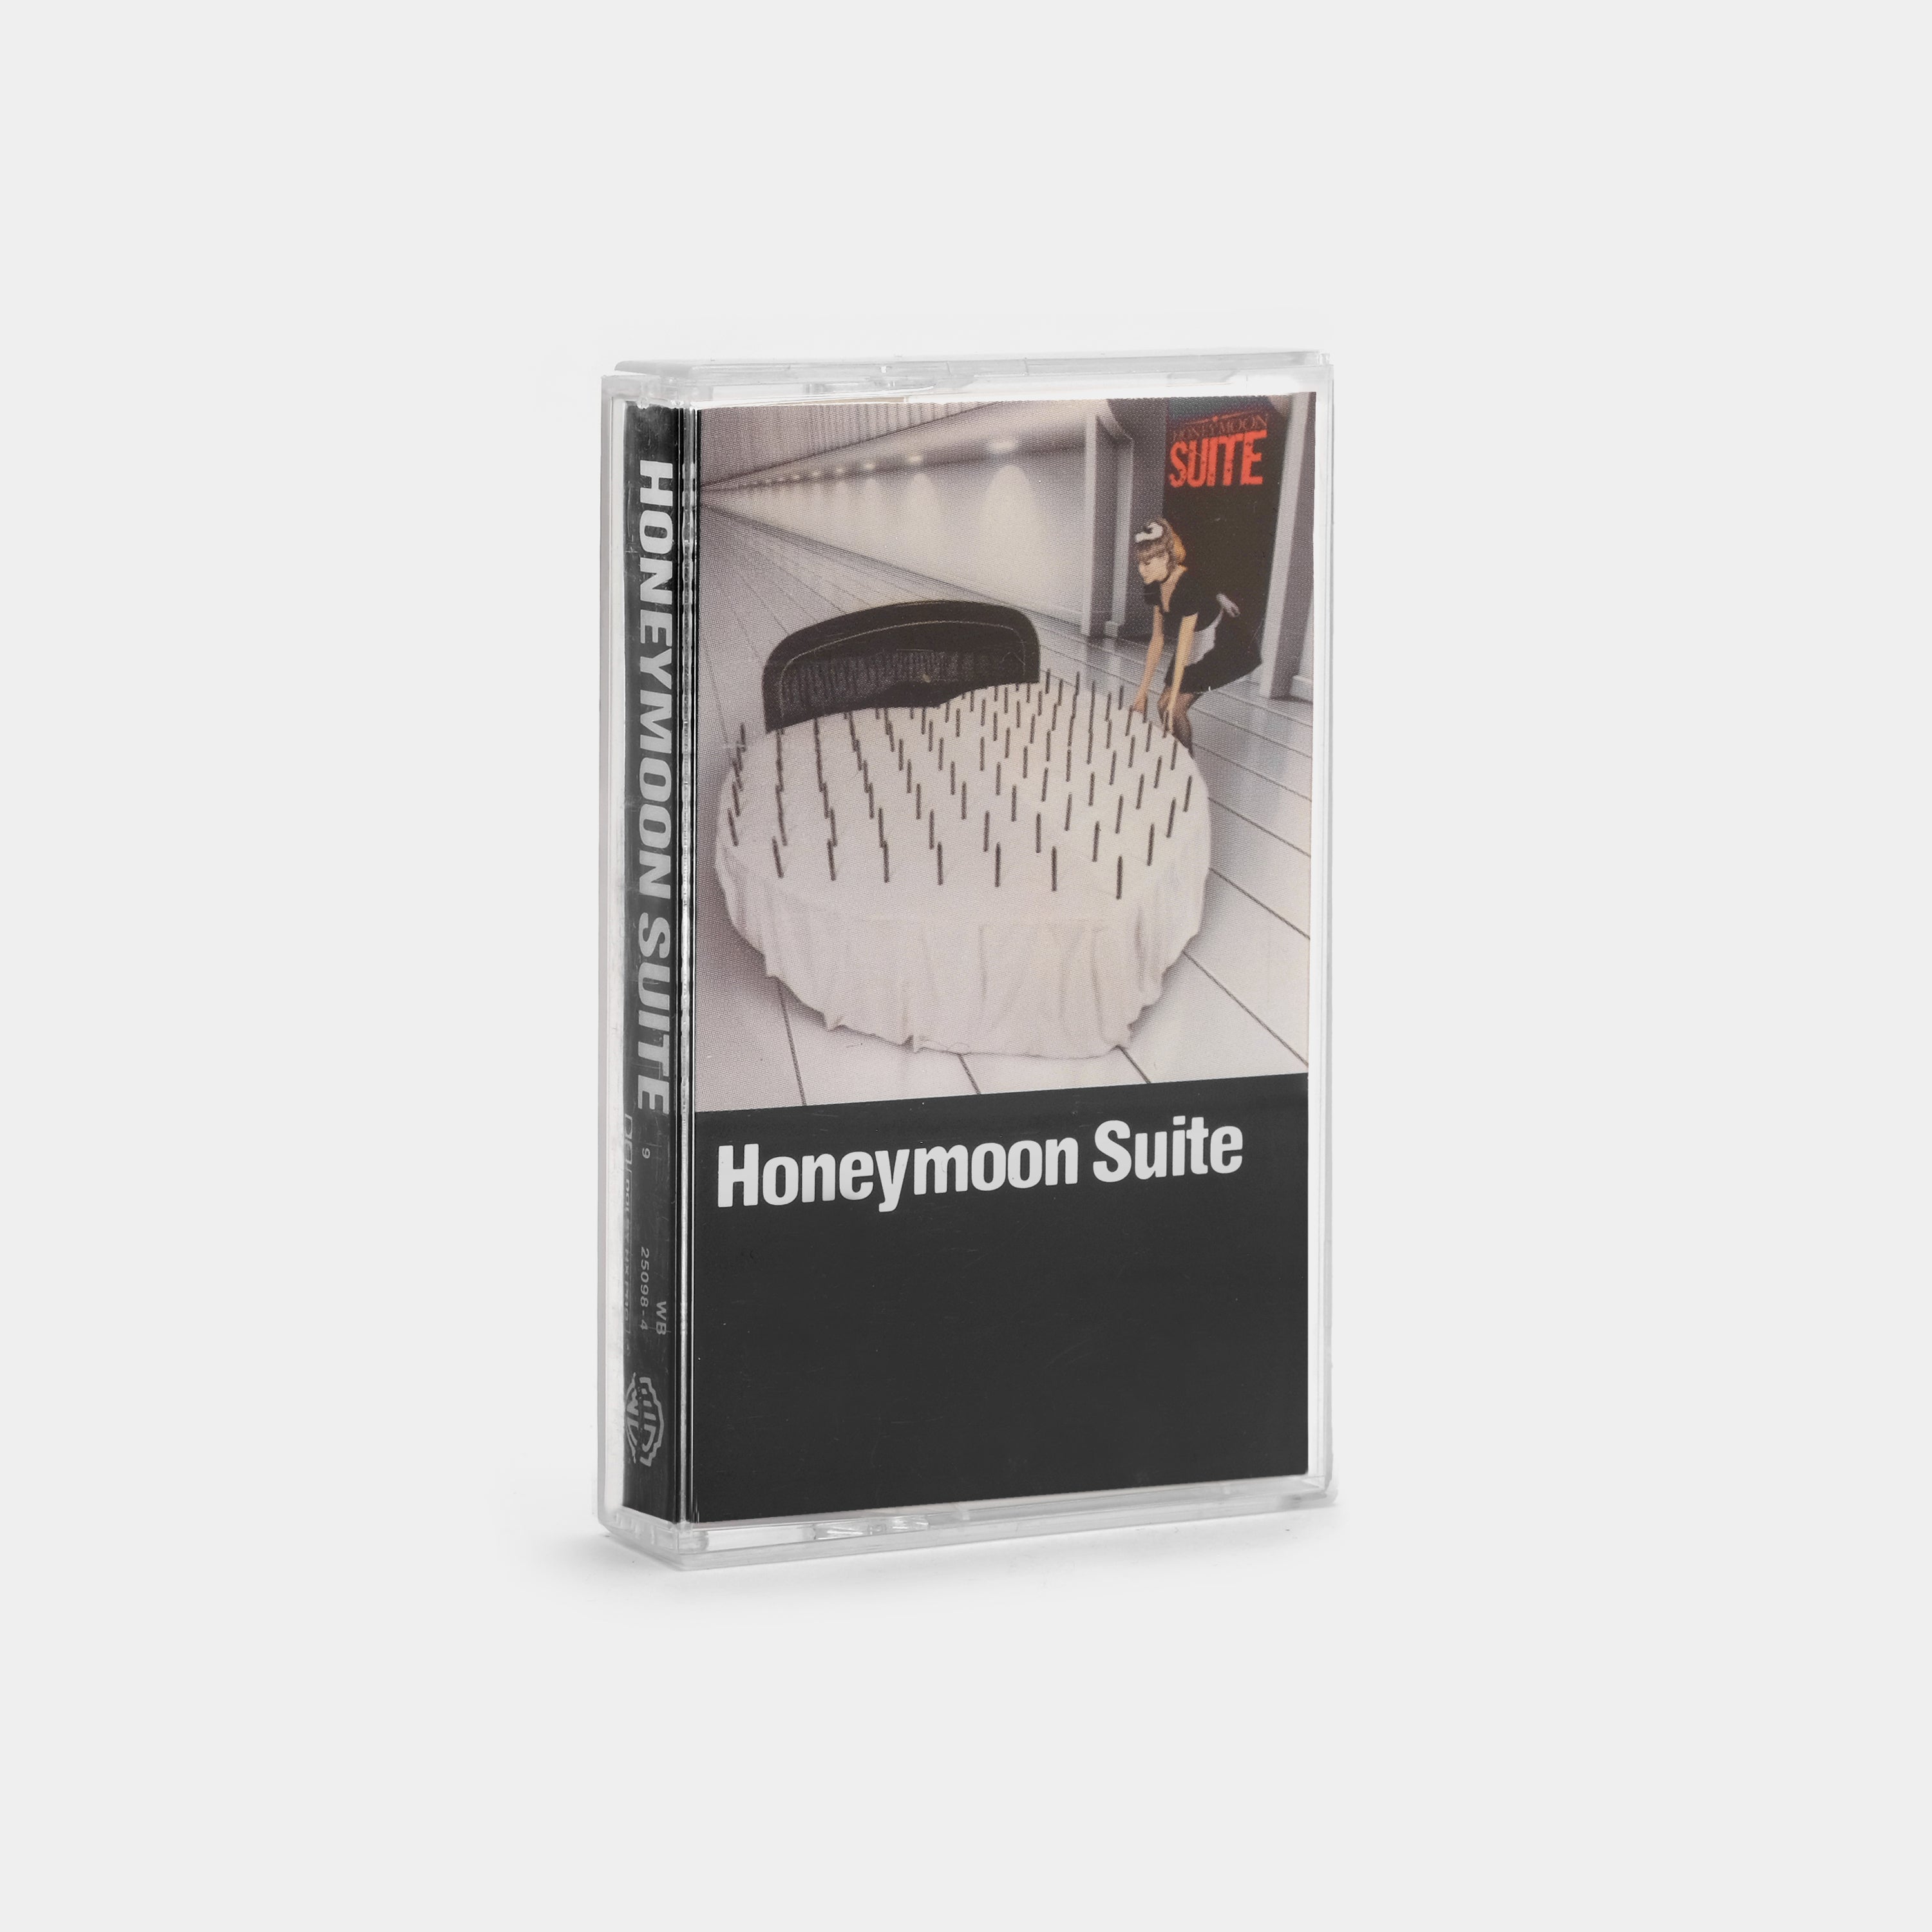 Honeymoon Suite - Honeymoon Suite Cassette Tape